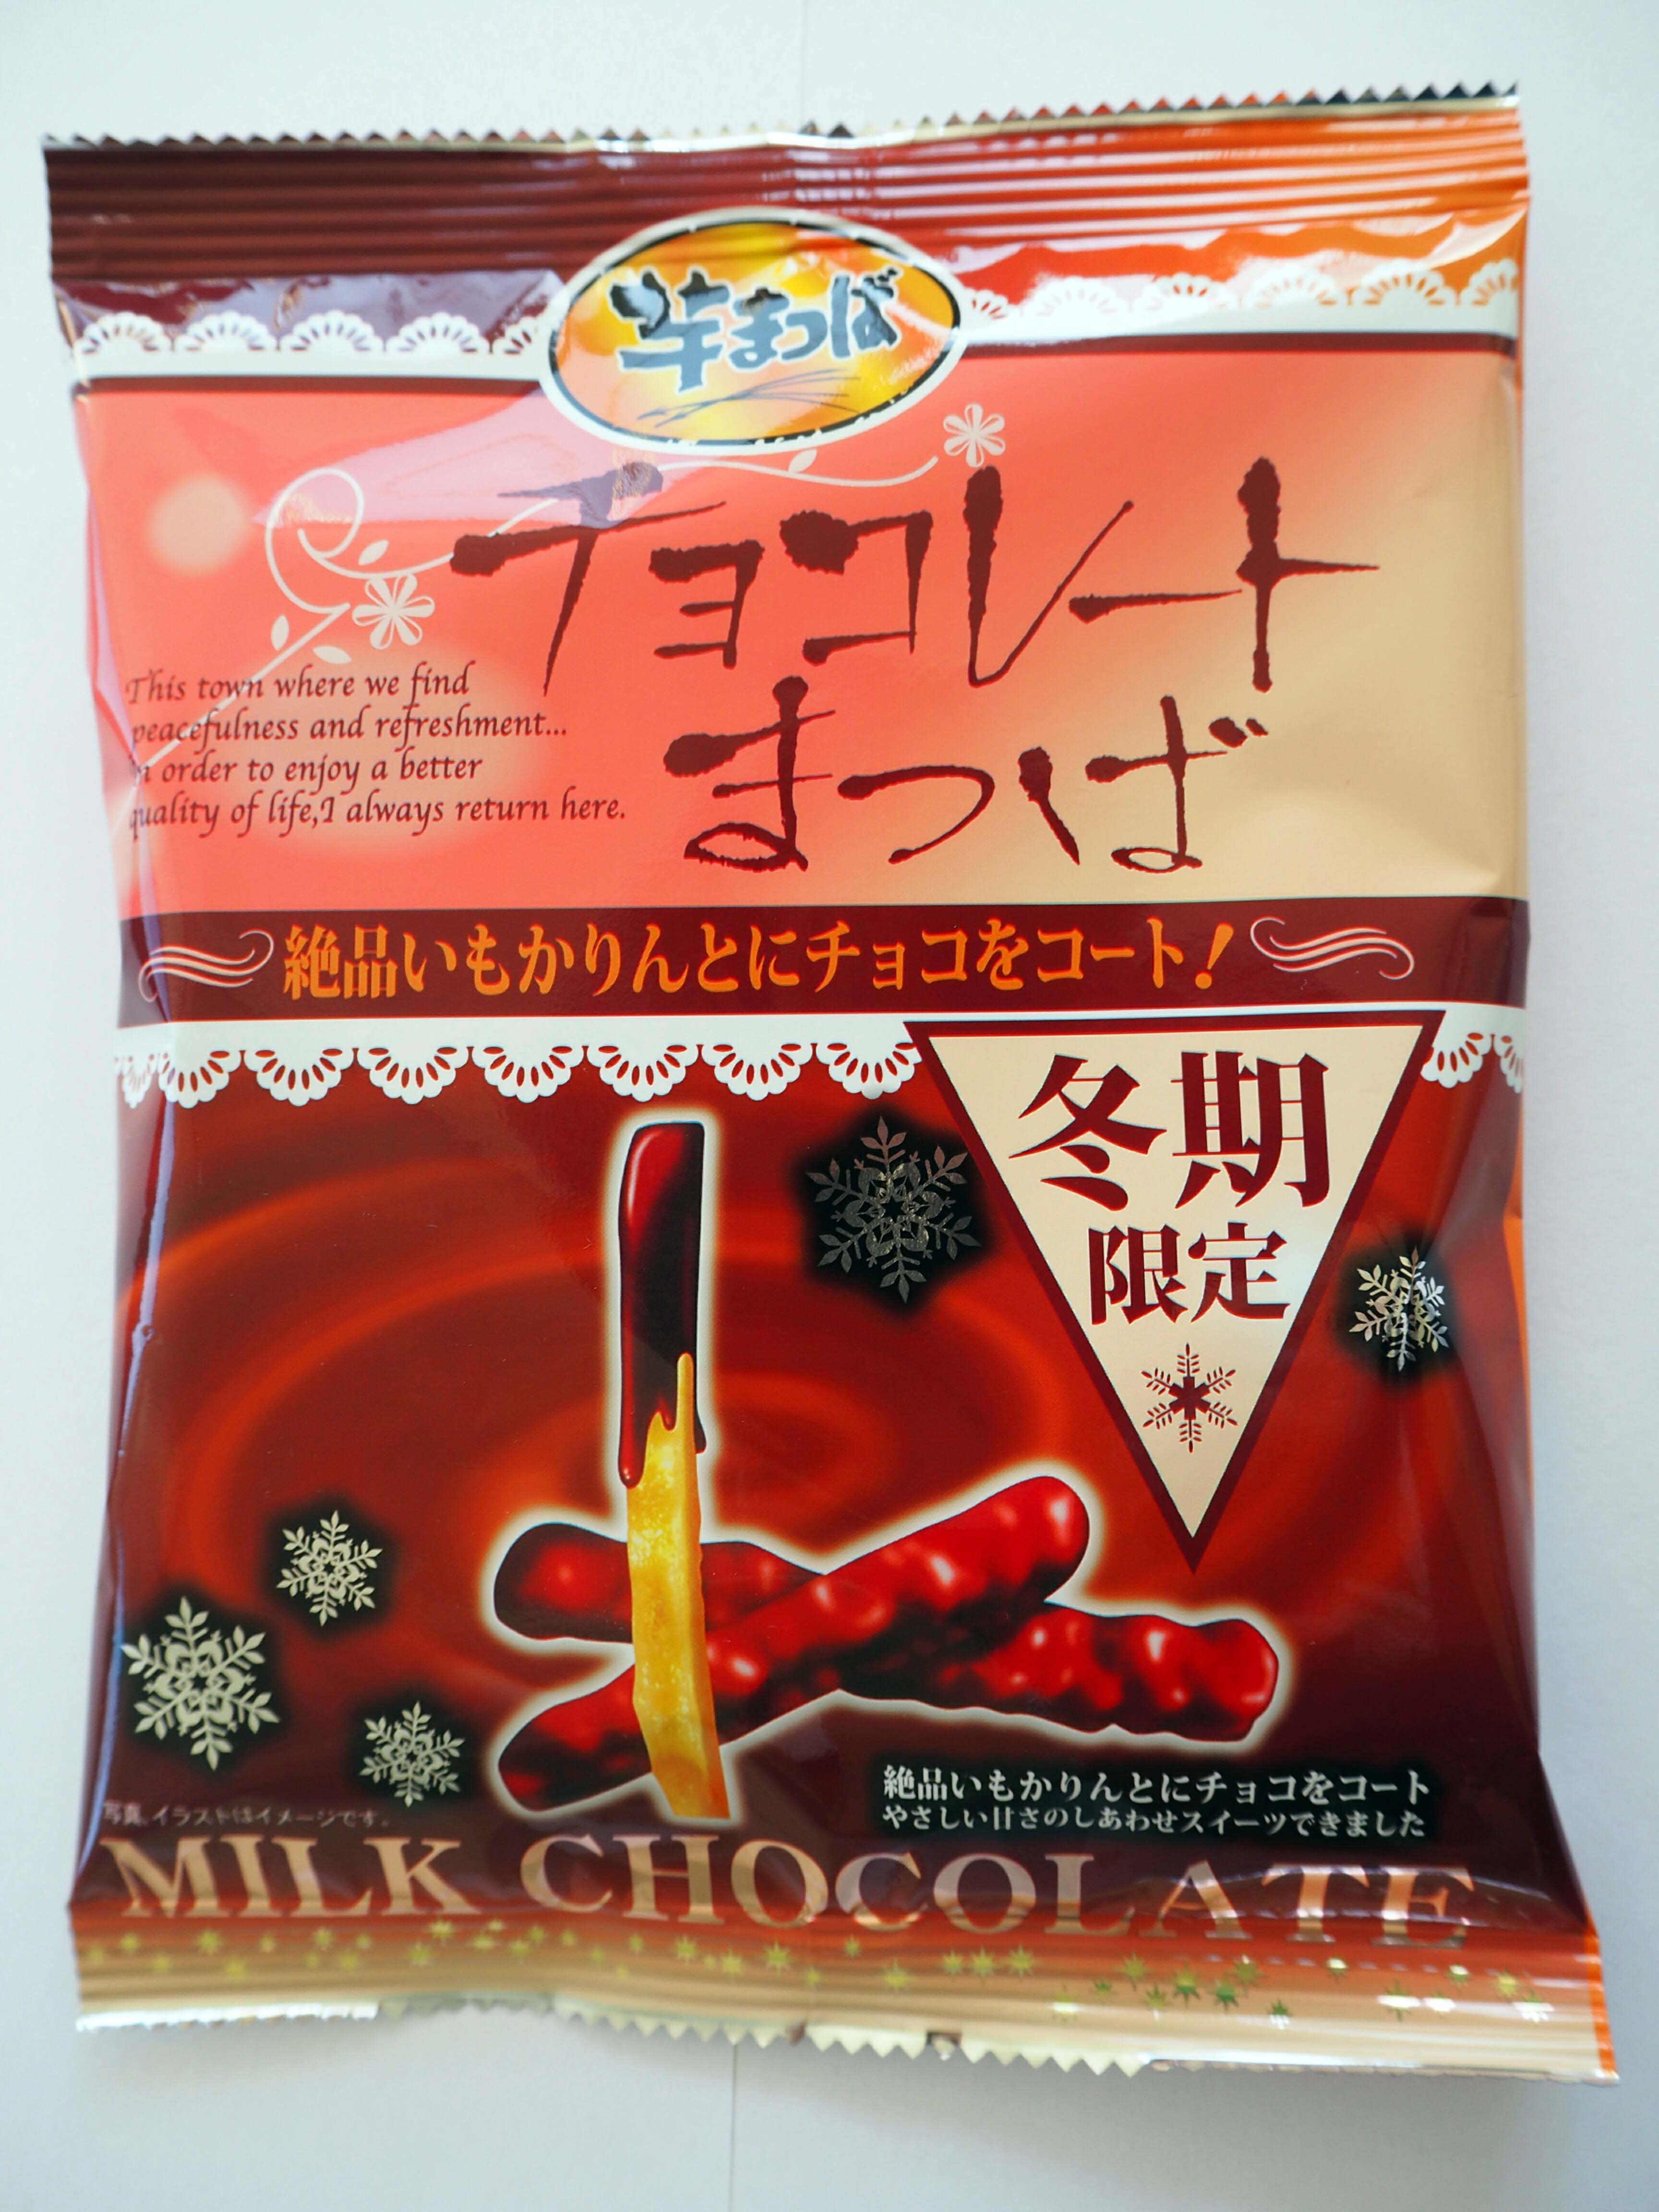 松浦 食品 チョコレート まつ ば